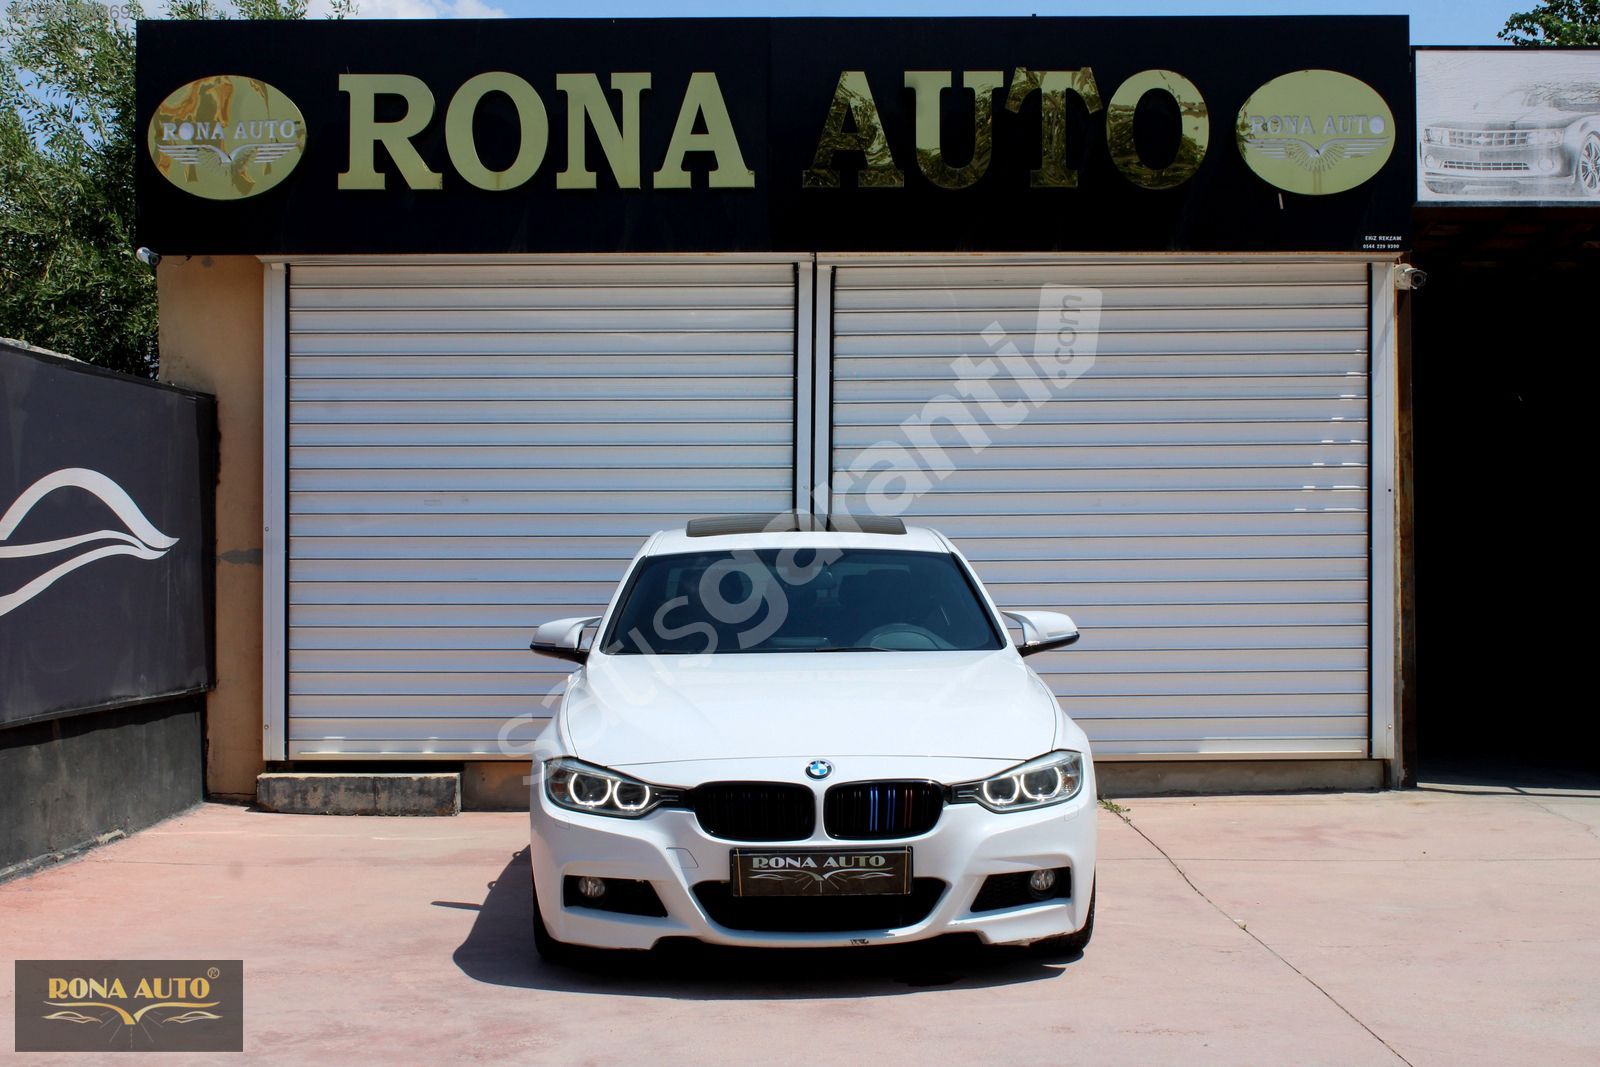 RONADAN 2014 MODEL BMW 3.16i M SPORT 160KM'DE HATASIZ BOYASIZ